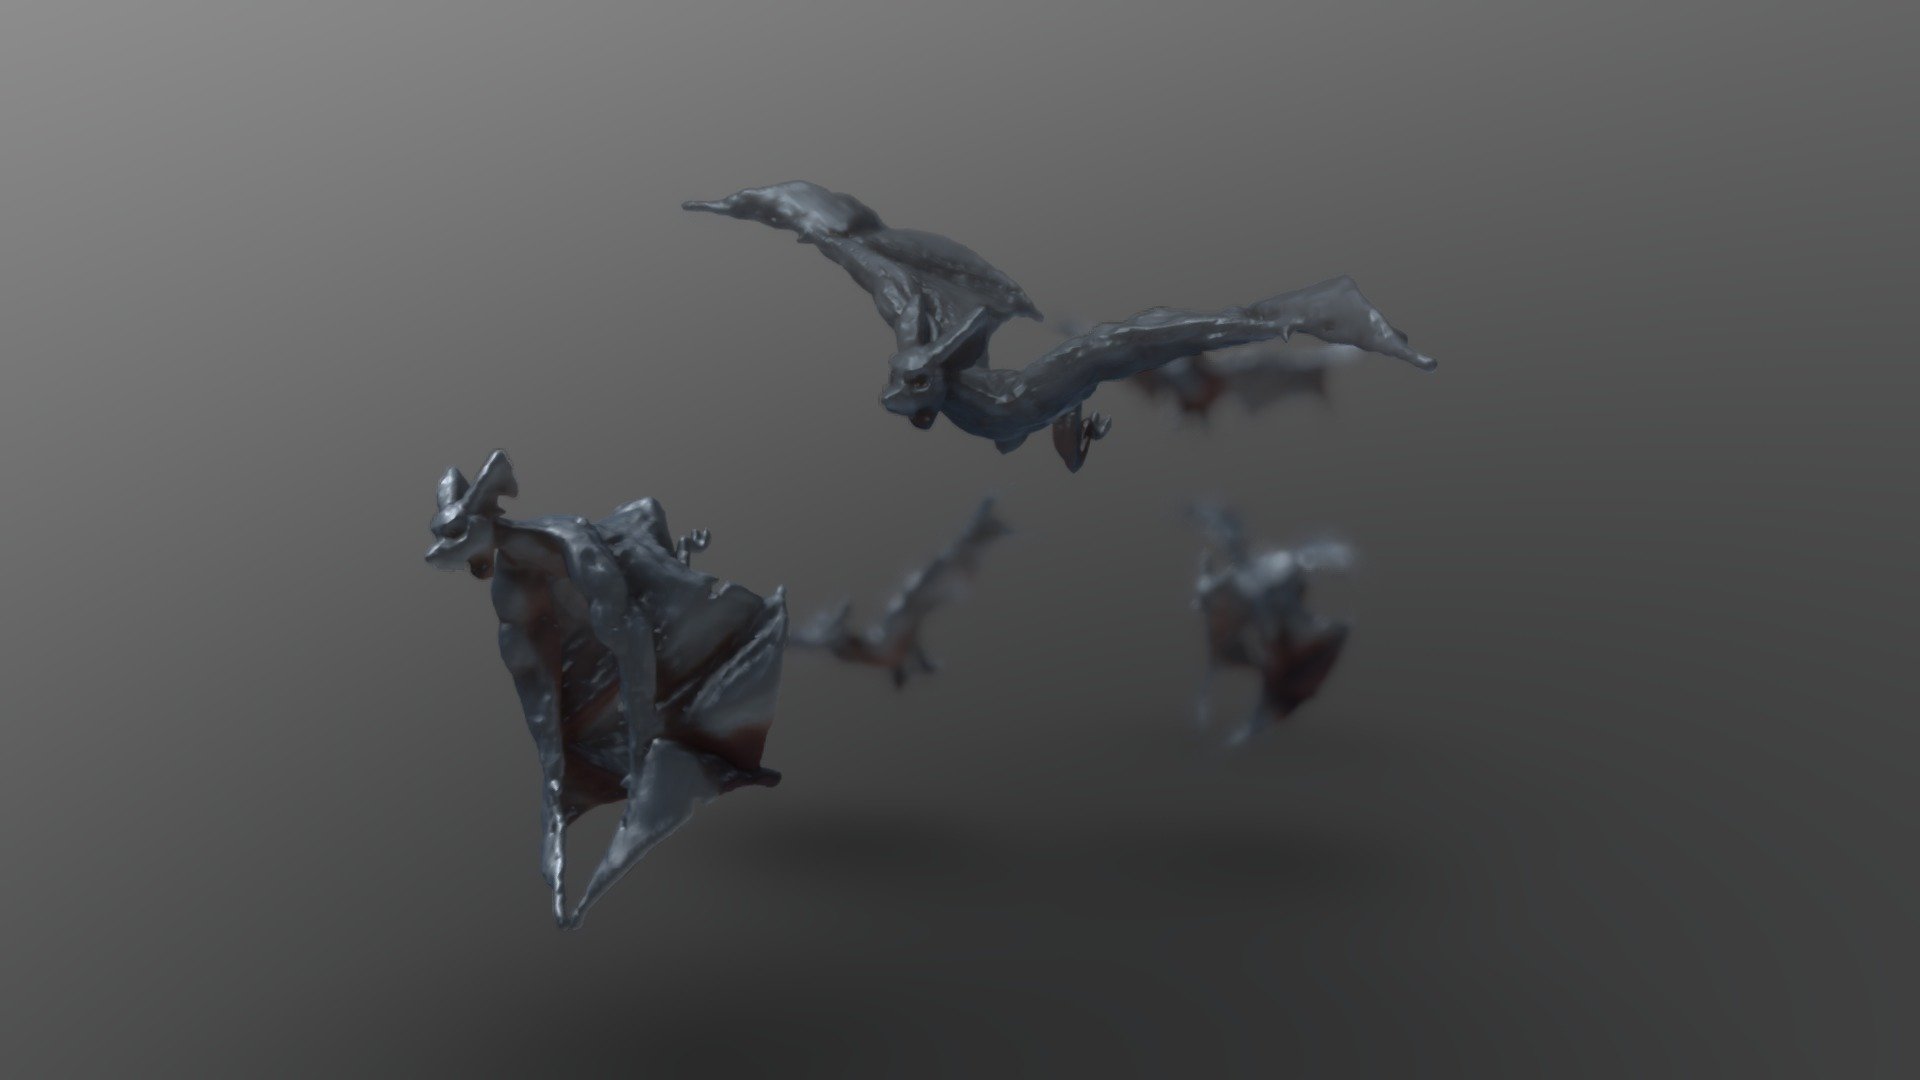 Bats in flight